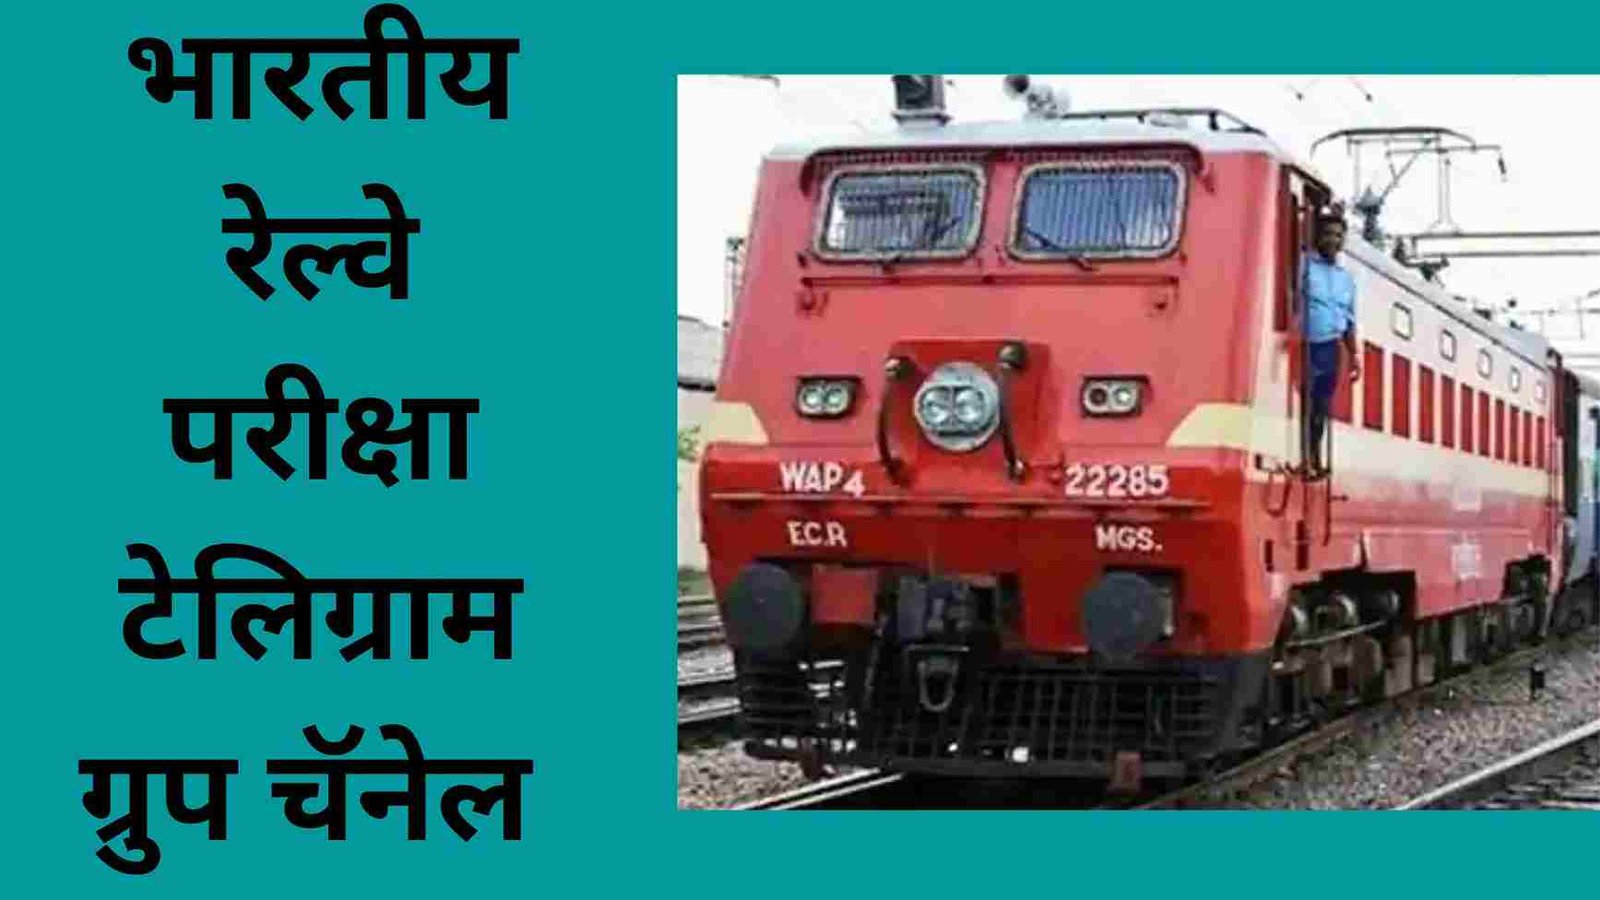 भारतीय रेल्वे परीक्षा टेलिग्राम ग्रुप चॅनेल | Indian Railway Exam Telegram Group Channel Links